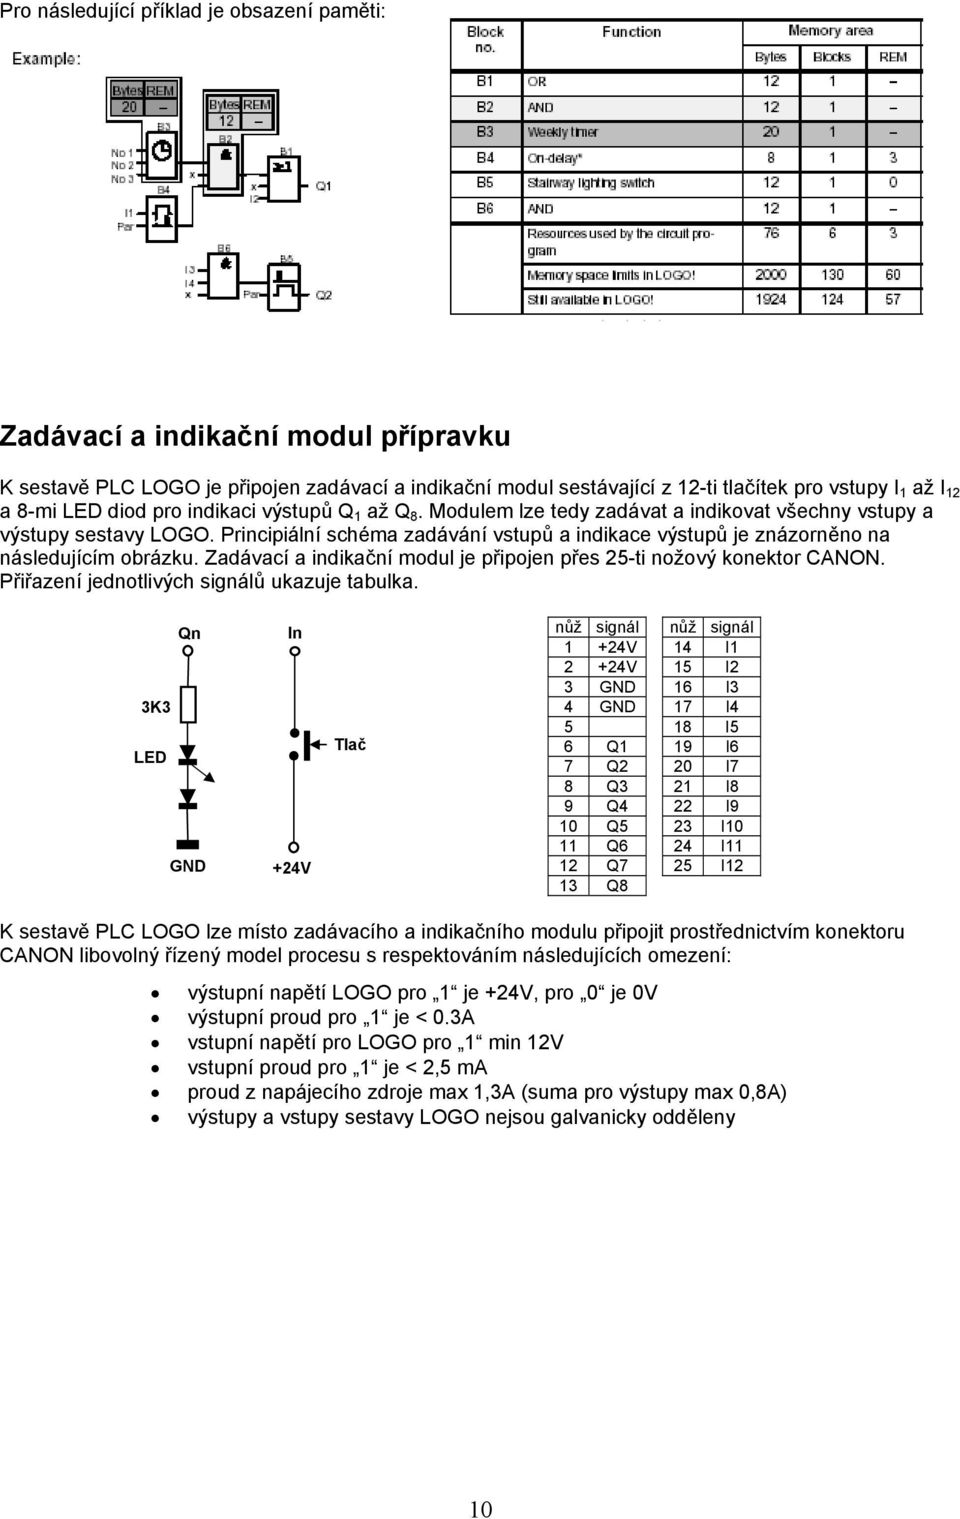 Principiální schéma zadávání vstupů a indikace výstupů je znázorněno na následujícím obrázku. Zadávací a indikační modul je připojen přes 25-ti nožový konektor CANON.